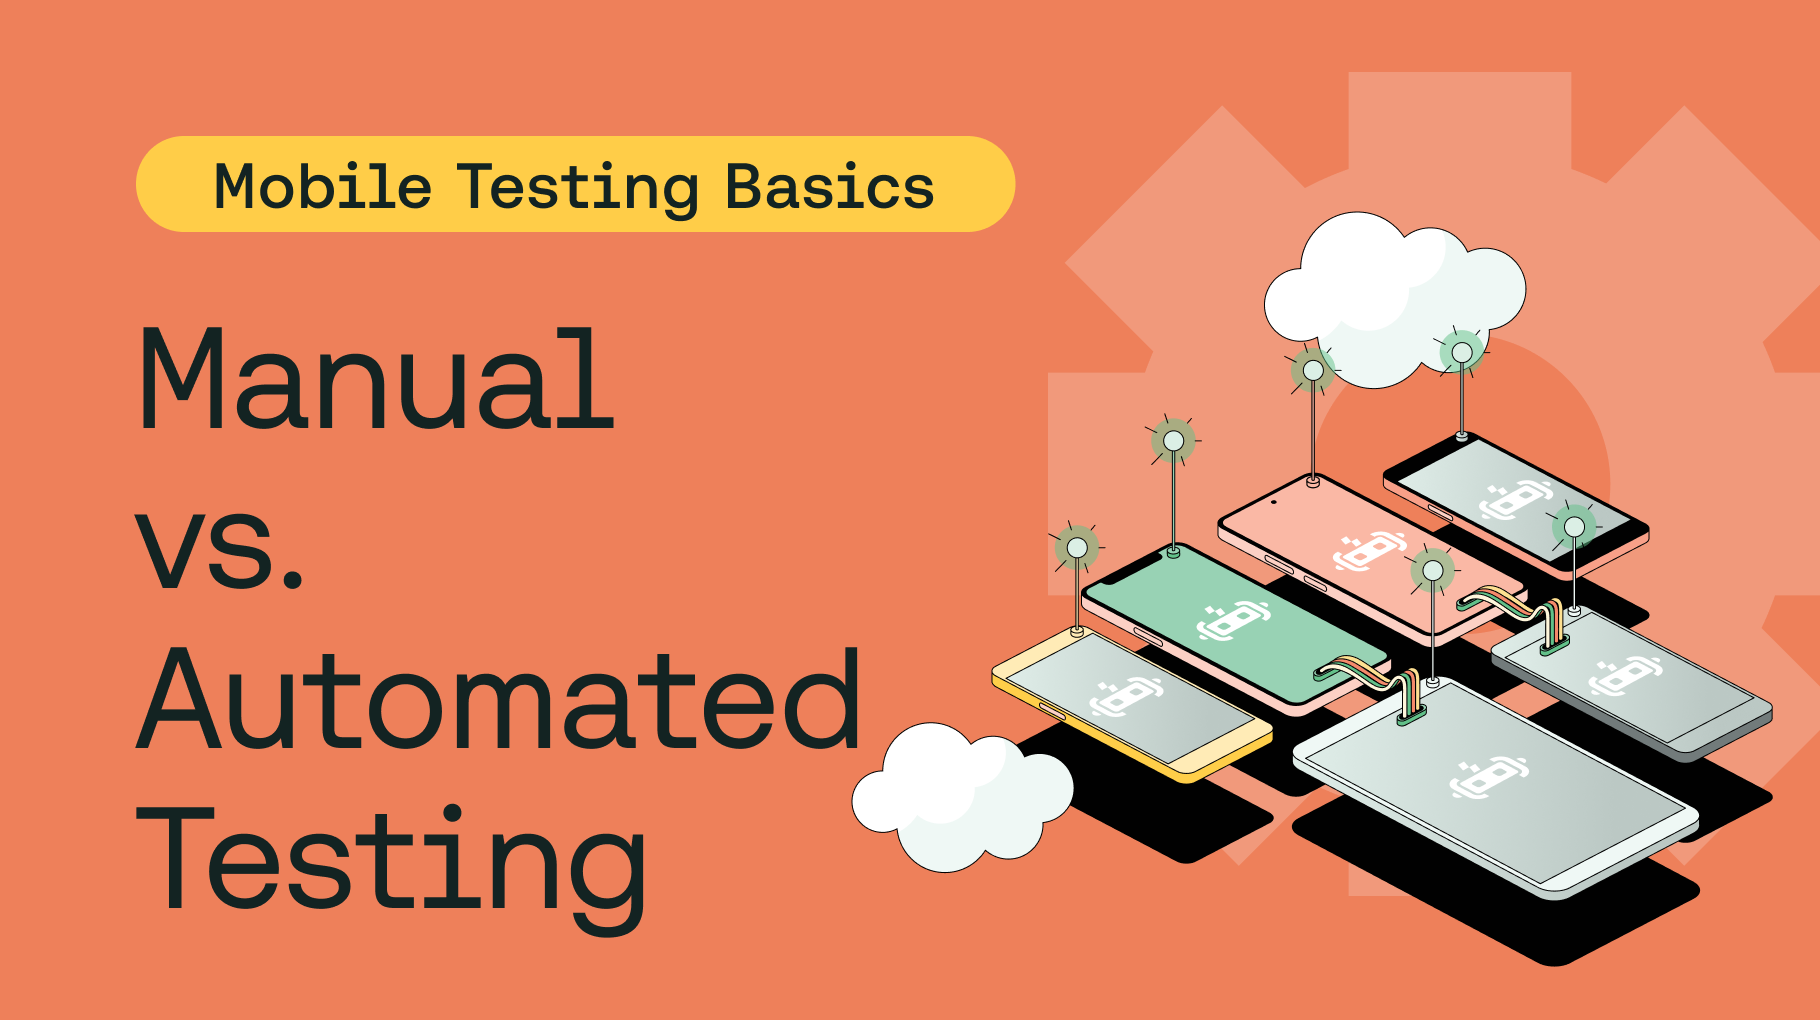 Balancing Manual and Automated Tests